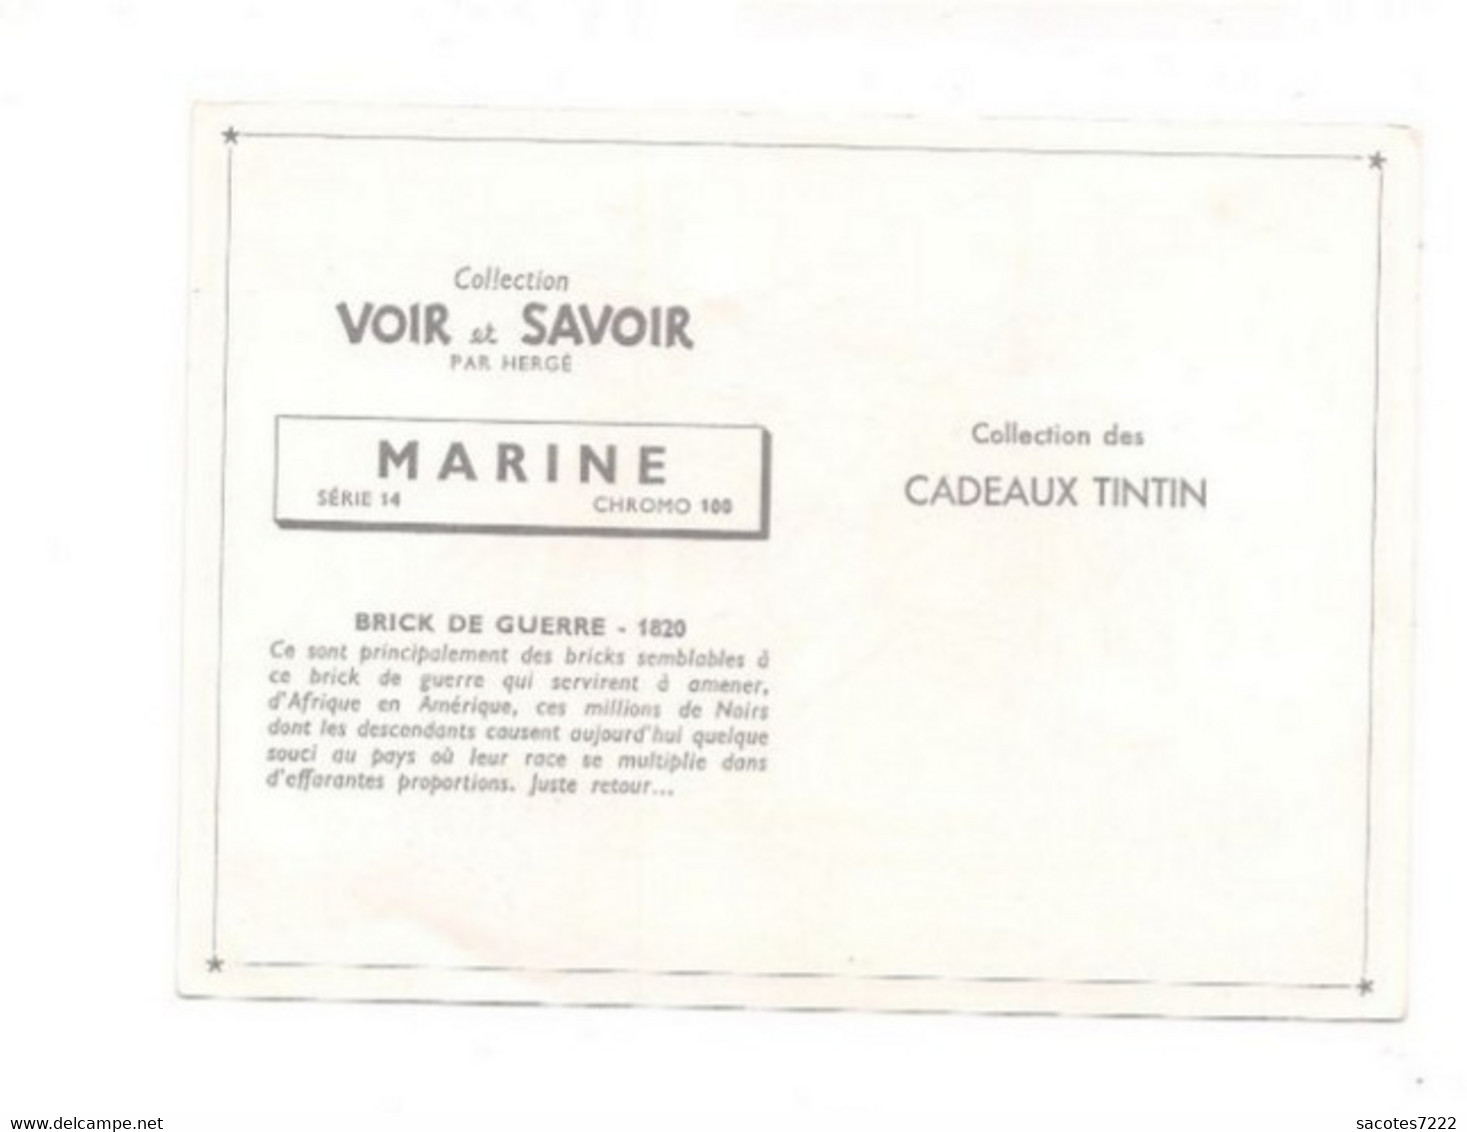 Collection Des CADEAUX TINTIN - CHROMO MARINE -    BRICK DE GUERRE 1820   - Série 14  N° 100 - - Chromos